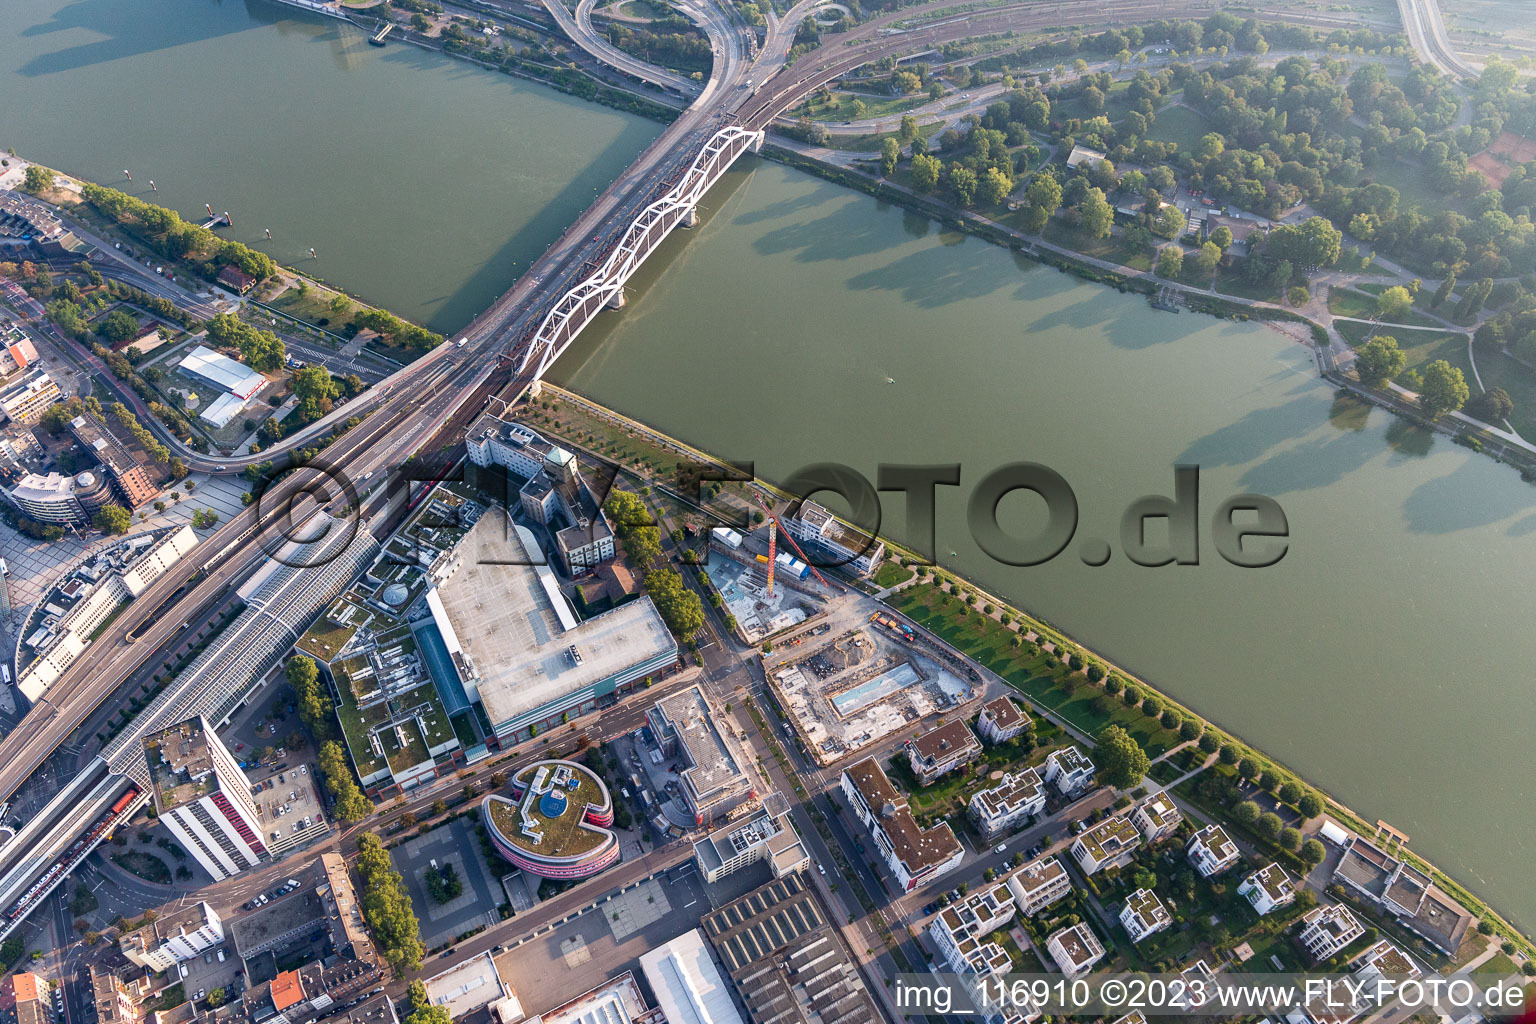 Luftbild von Fluß - Brückenbauwerk der Konradadenauerbrücke für Bahn und B37 über den Rhein in Ludwigshafen am Rhein im Ortsteil Süd im Bundesland Rheinland-Pfalz, Deutschland